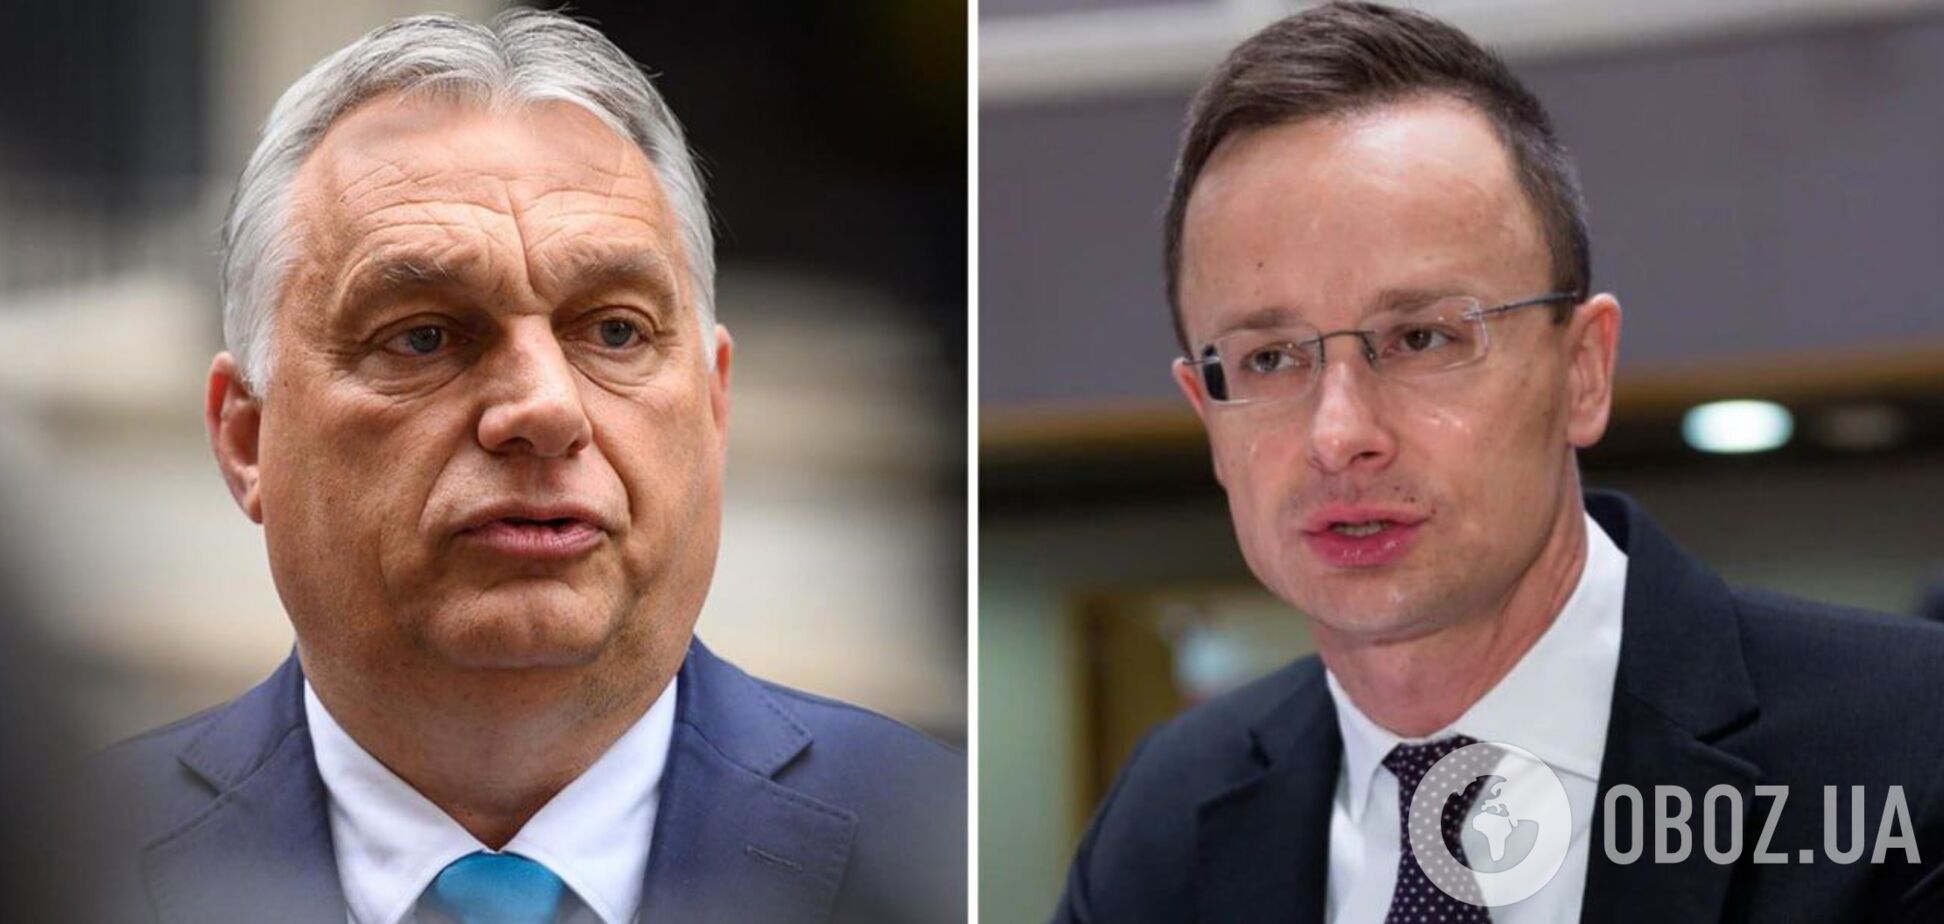 Сиярто захотел сотрудничать с РФ в отраслях, где нет санкций, а Орбан отправил письмо Путину